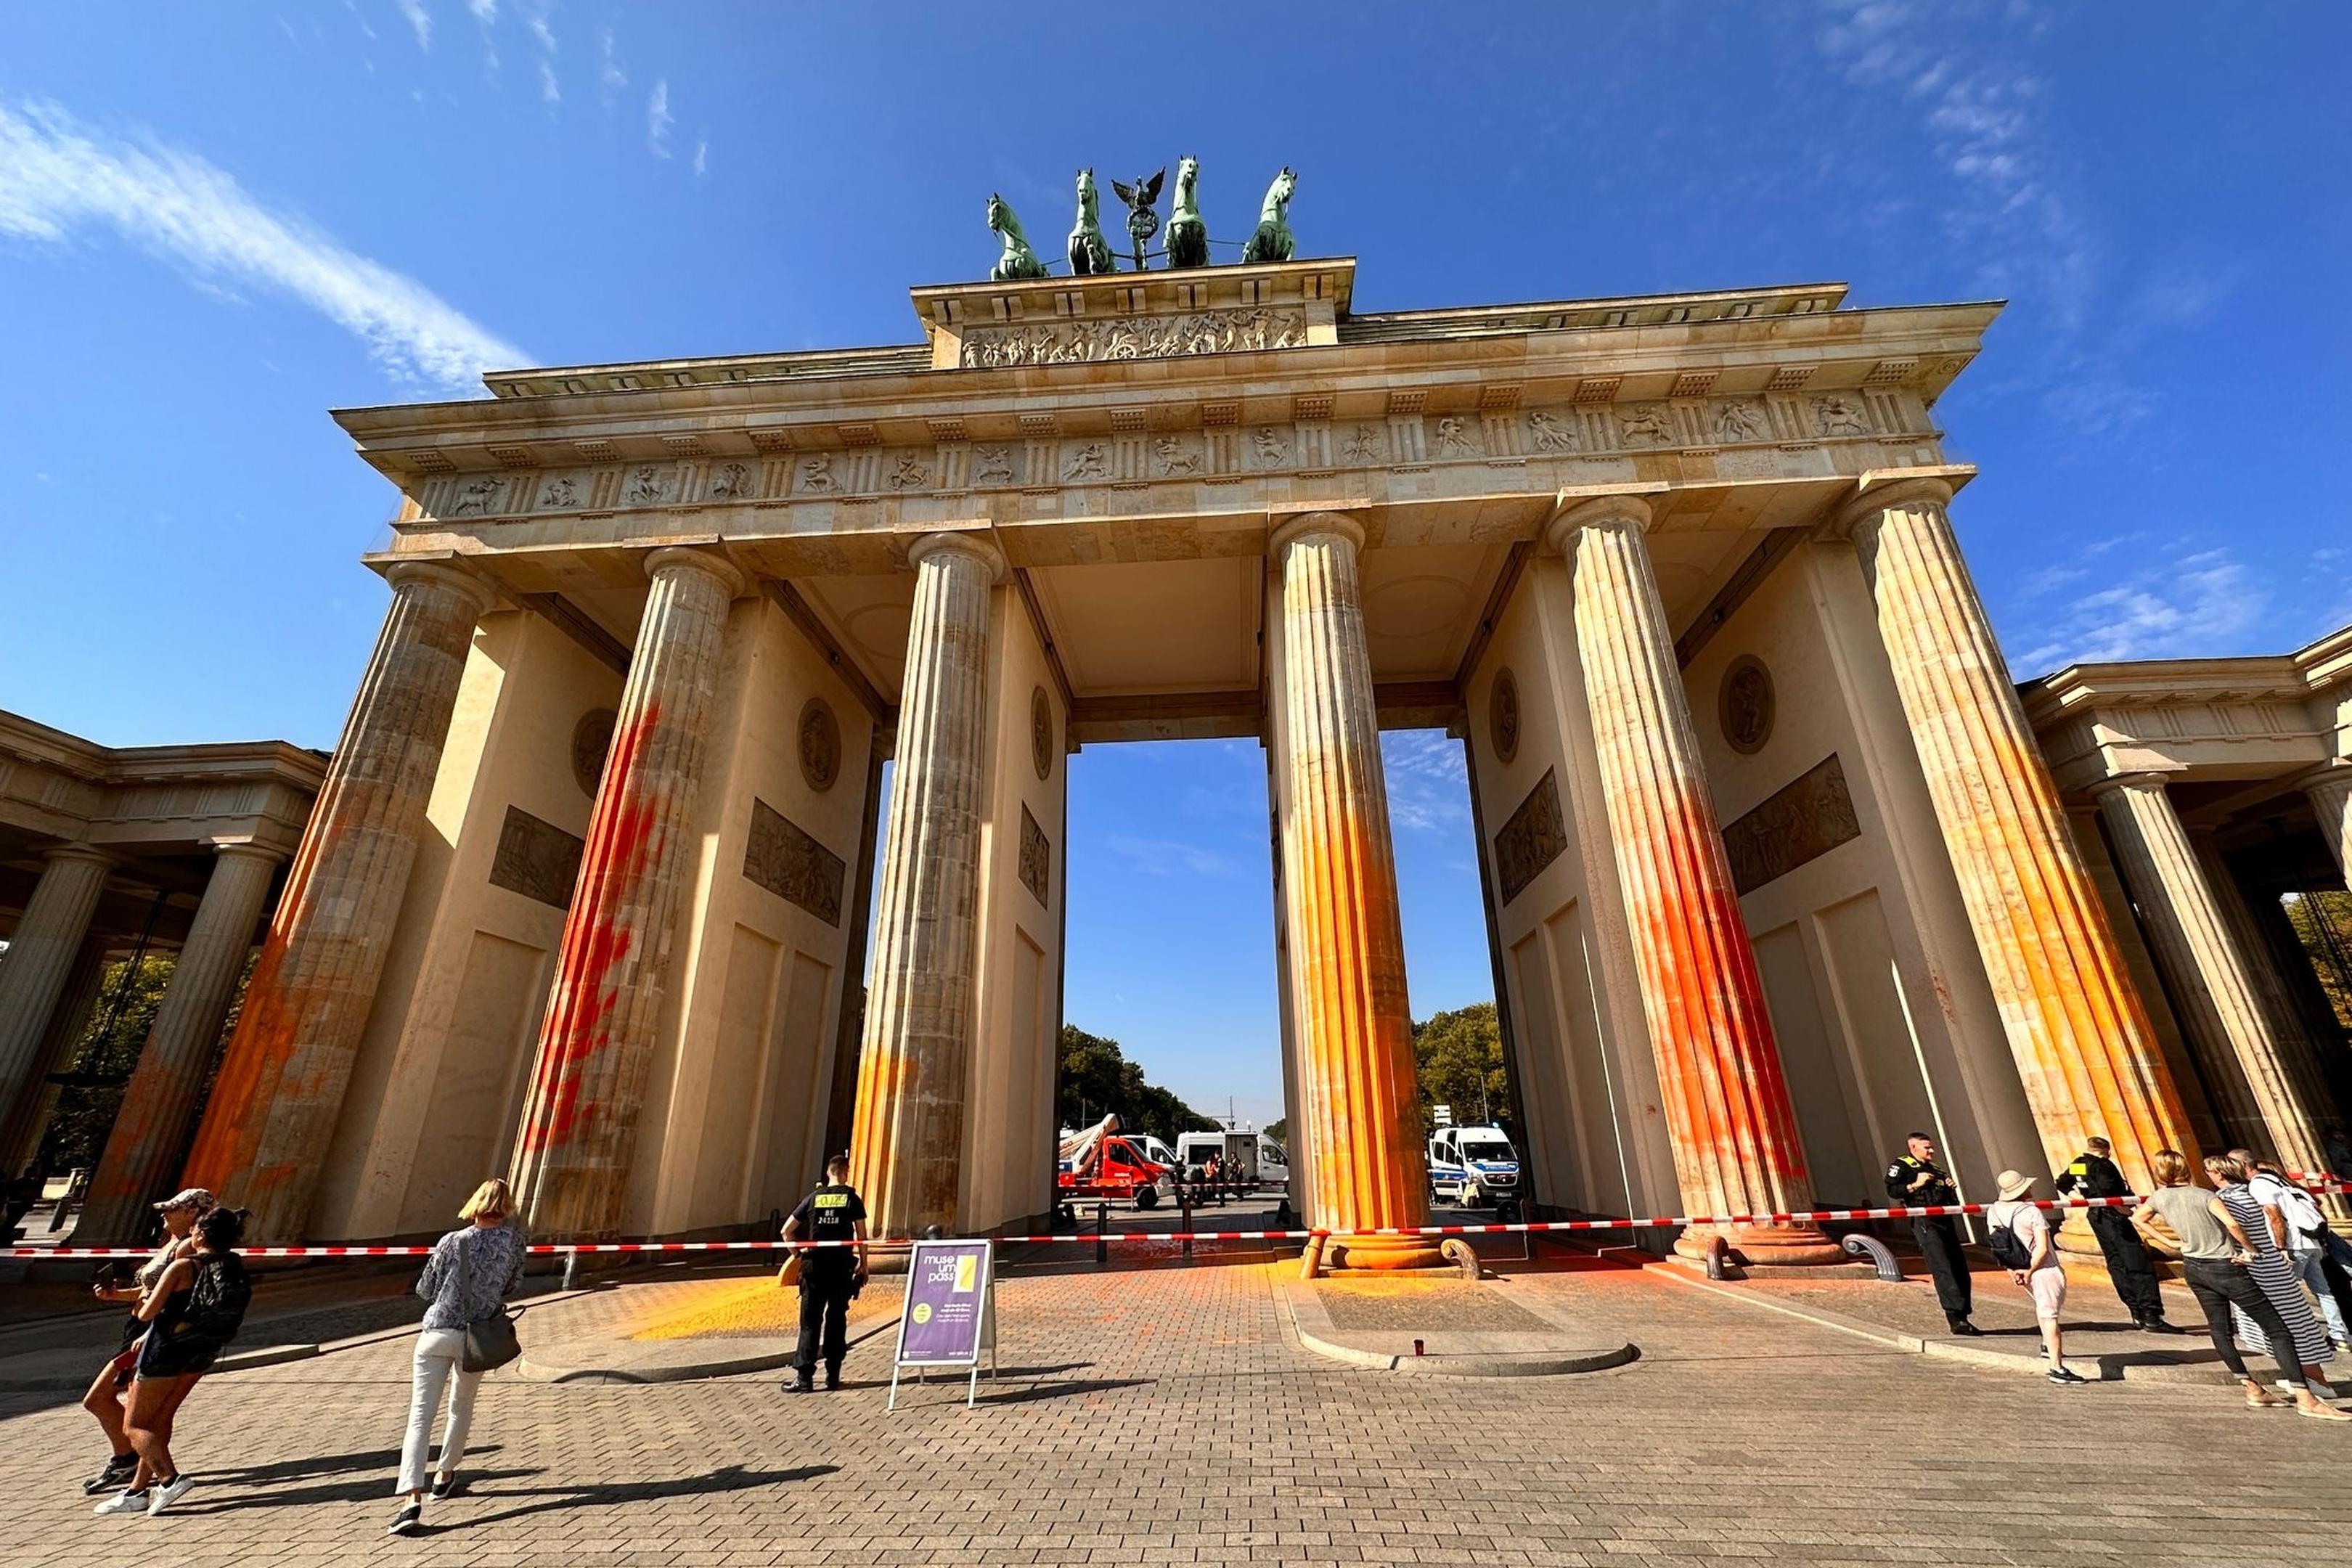 Mitglieder der Klimagruppe Letzte Generation sprühten das Brandenburger Tor im vergangenen September mit oranger Farbe an.